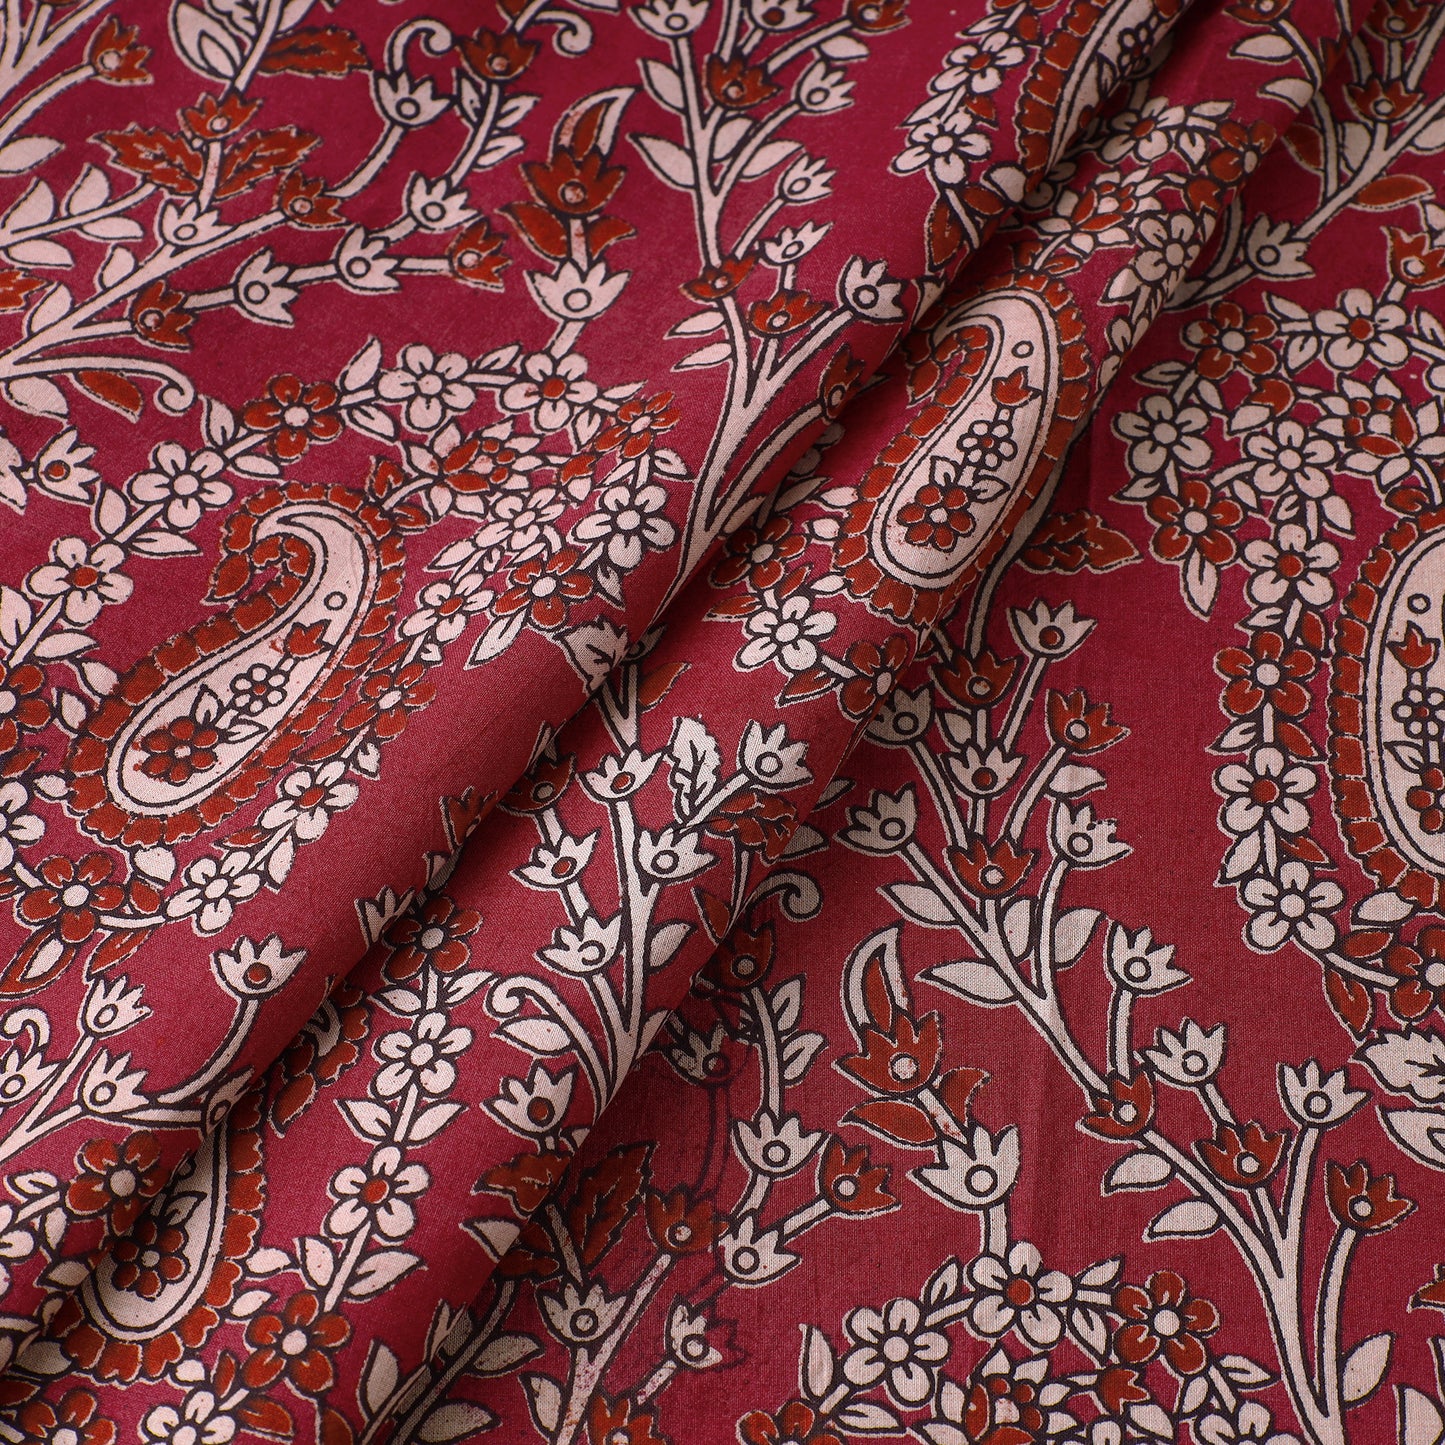 Pink - Kalamkari Printed Cotton Fabric 19